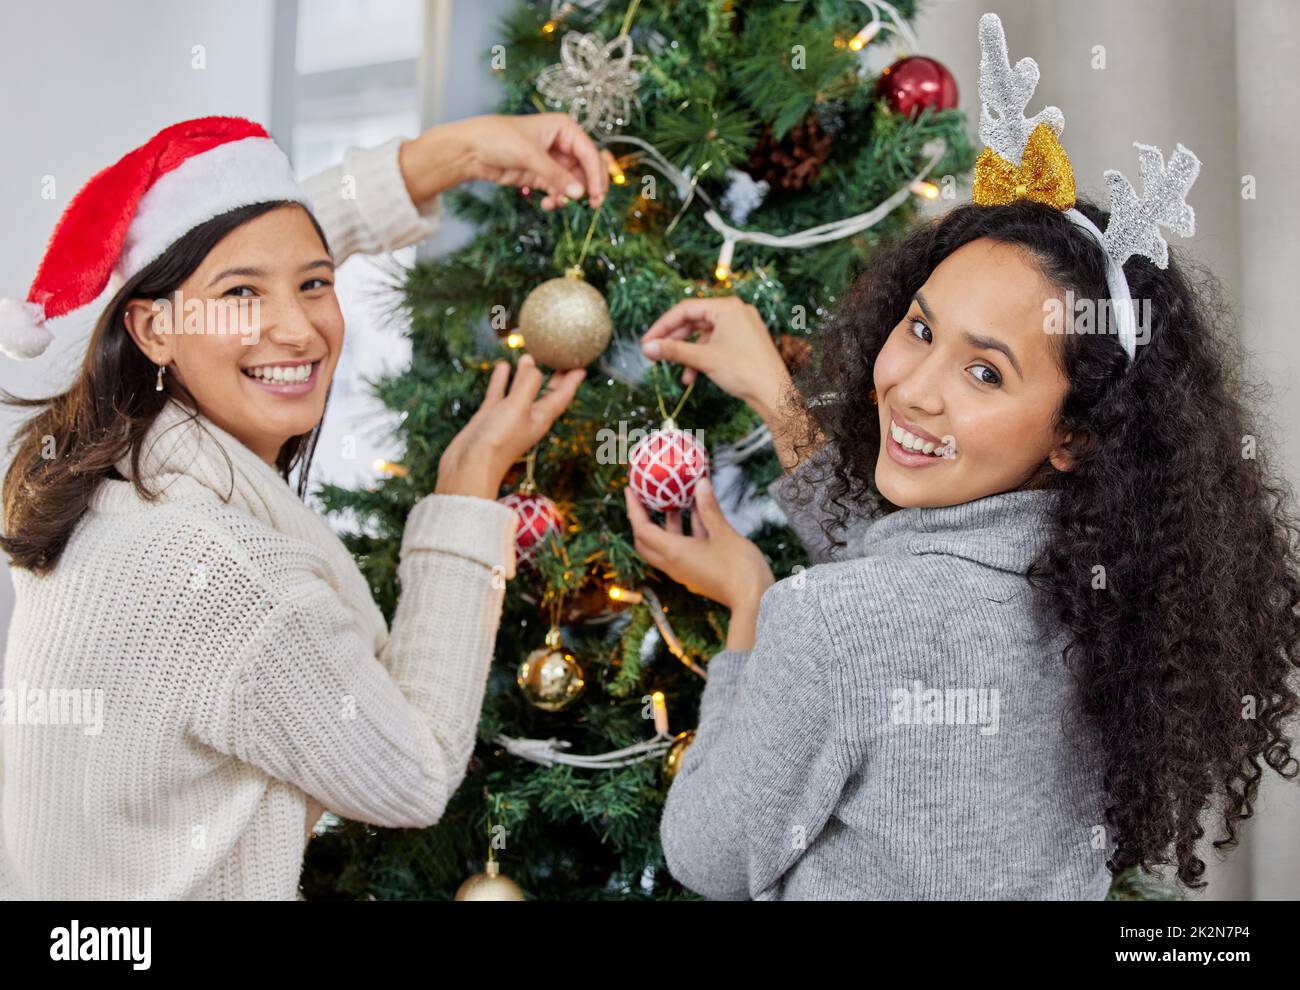 Zeit, den Baum zu schmücken. Aufnahme von zwei jungen Frauen, die den Weihnachtsbaum zu Hause schmücken. Stockfoto